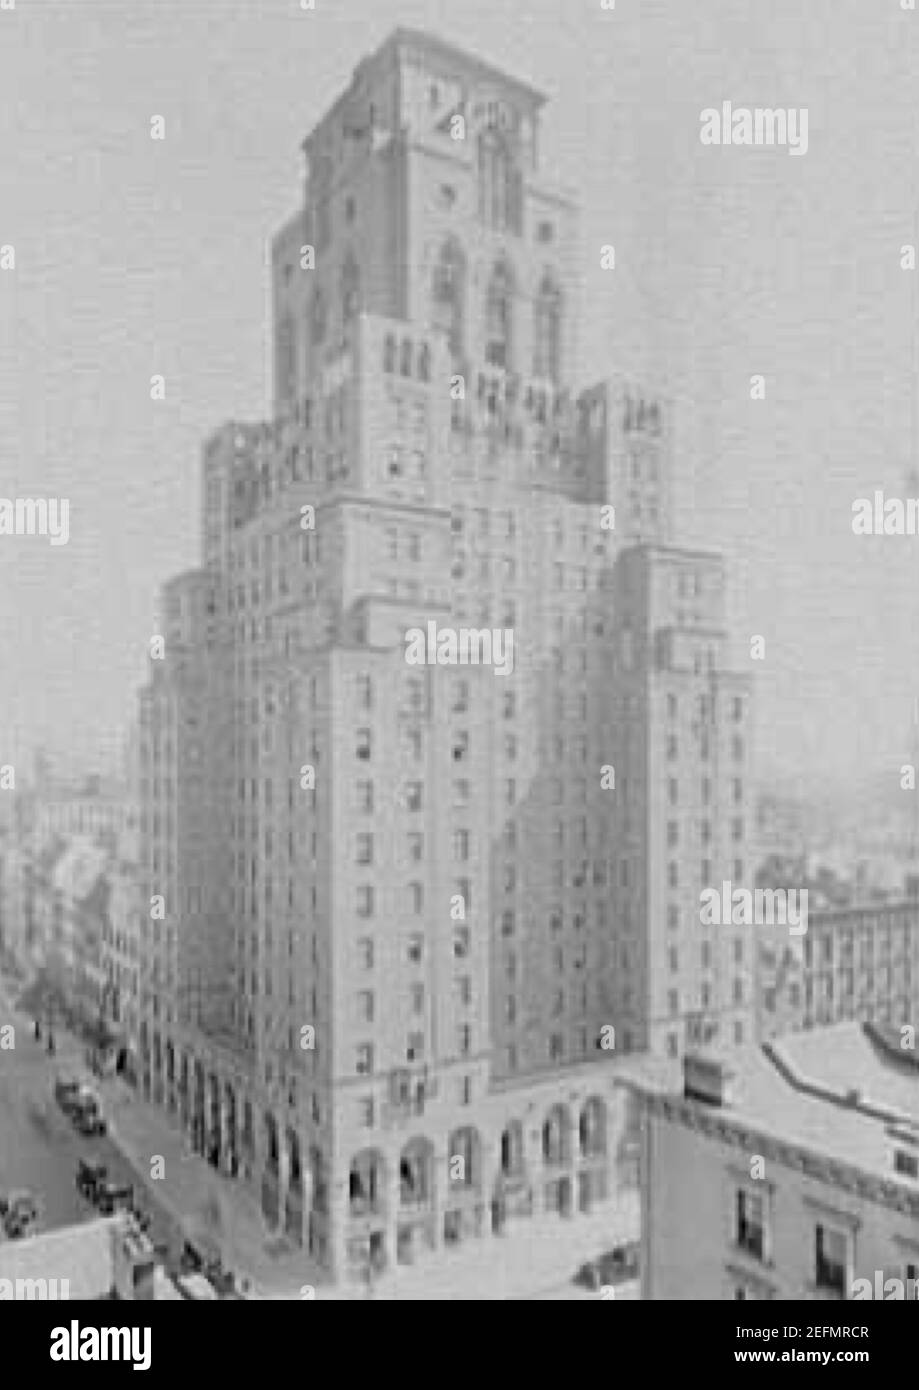 Das Barbizon Hotel in New York. Das Hotel ist ein legendäres Hotel und Heimat vieler zukünftiger Berühmtheiten wie Joan Crawford, Grace Kelly, Candice Bergen und Ali McGraw. Stockfoto